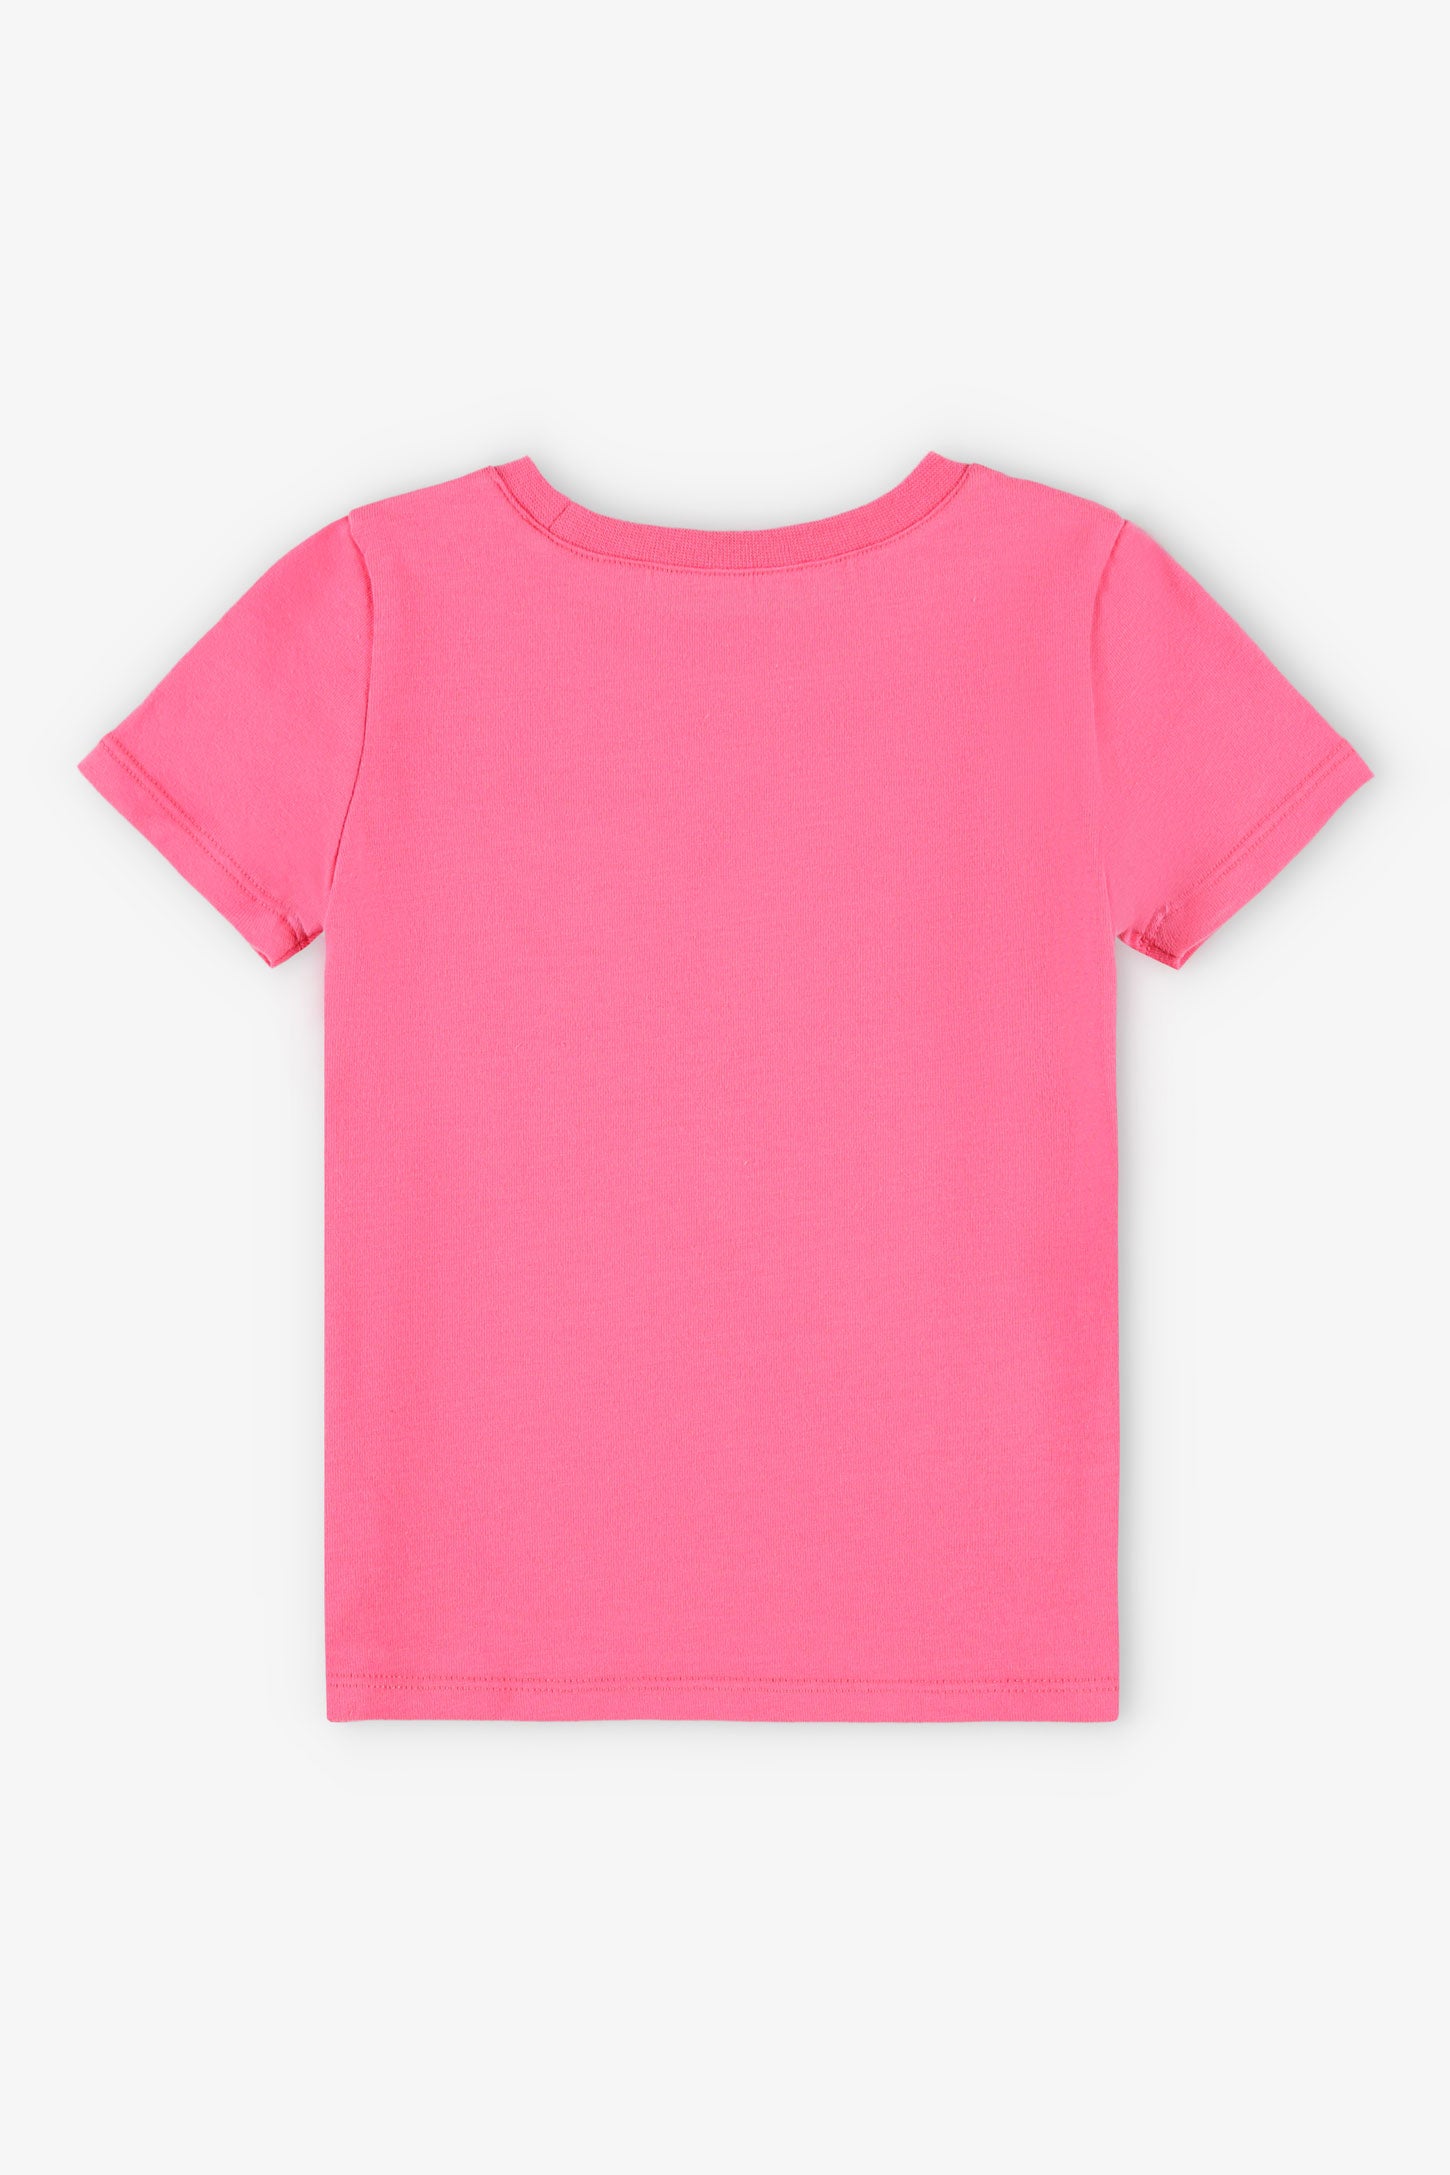 Duos futés, T-shirt à poche, 2T-3T, 2/20$ - Bébé fille && ROSE FONCE